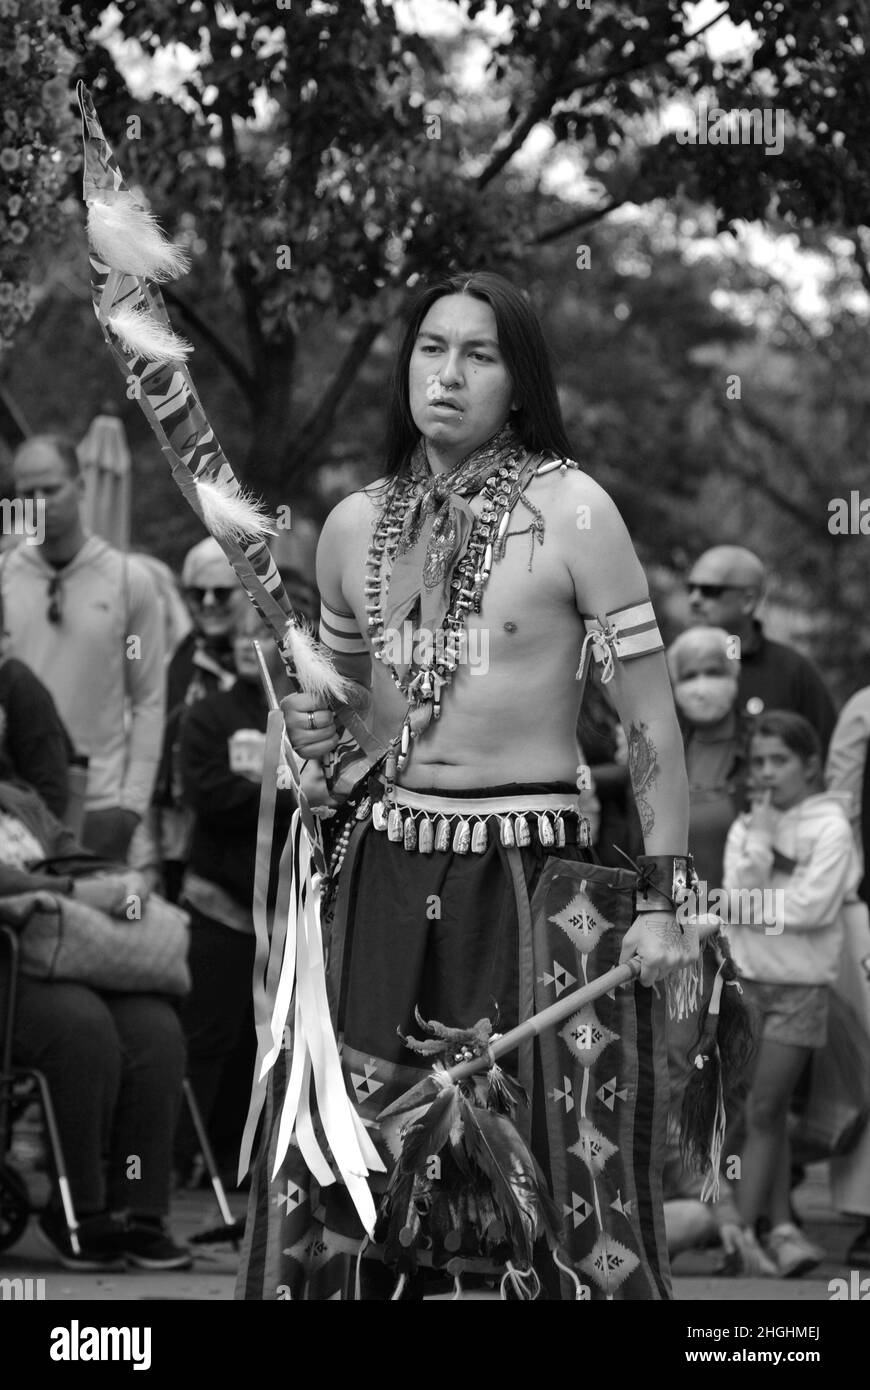 Des membres d'un groupe de danse amérindienne d'Ohkay Owingeh pueblo se produisent à l'occasion de la célébration de la Journée des peuples autochtones à Santa Fe, au Nouveau-Mexique. Banque D'Images